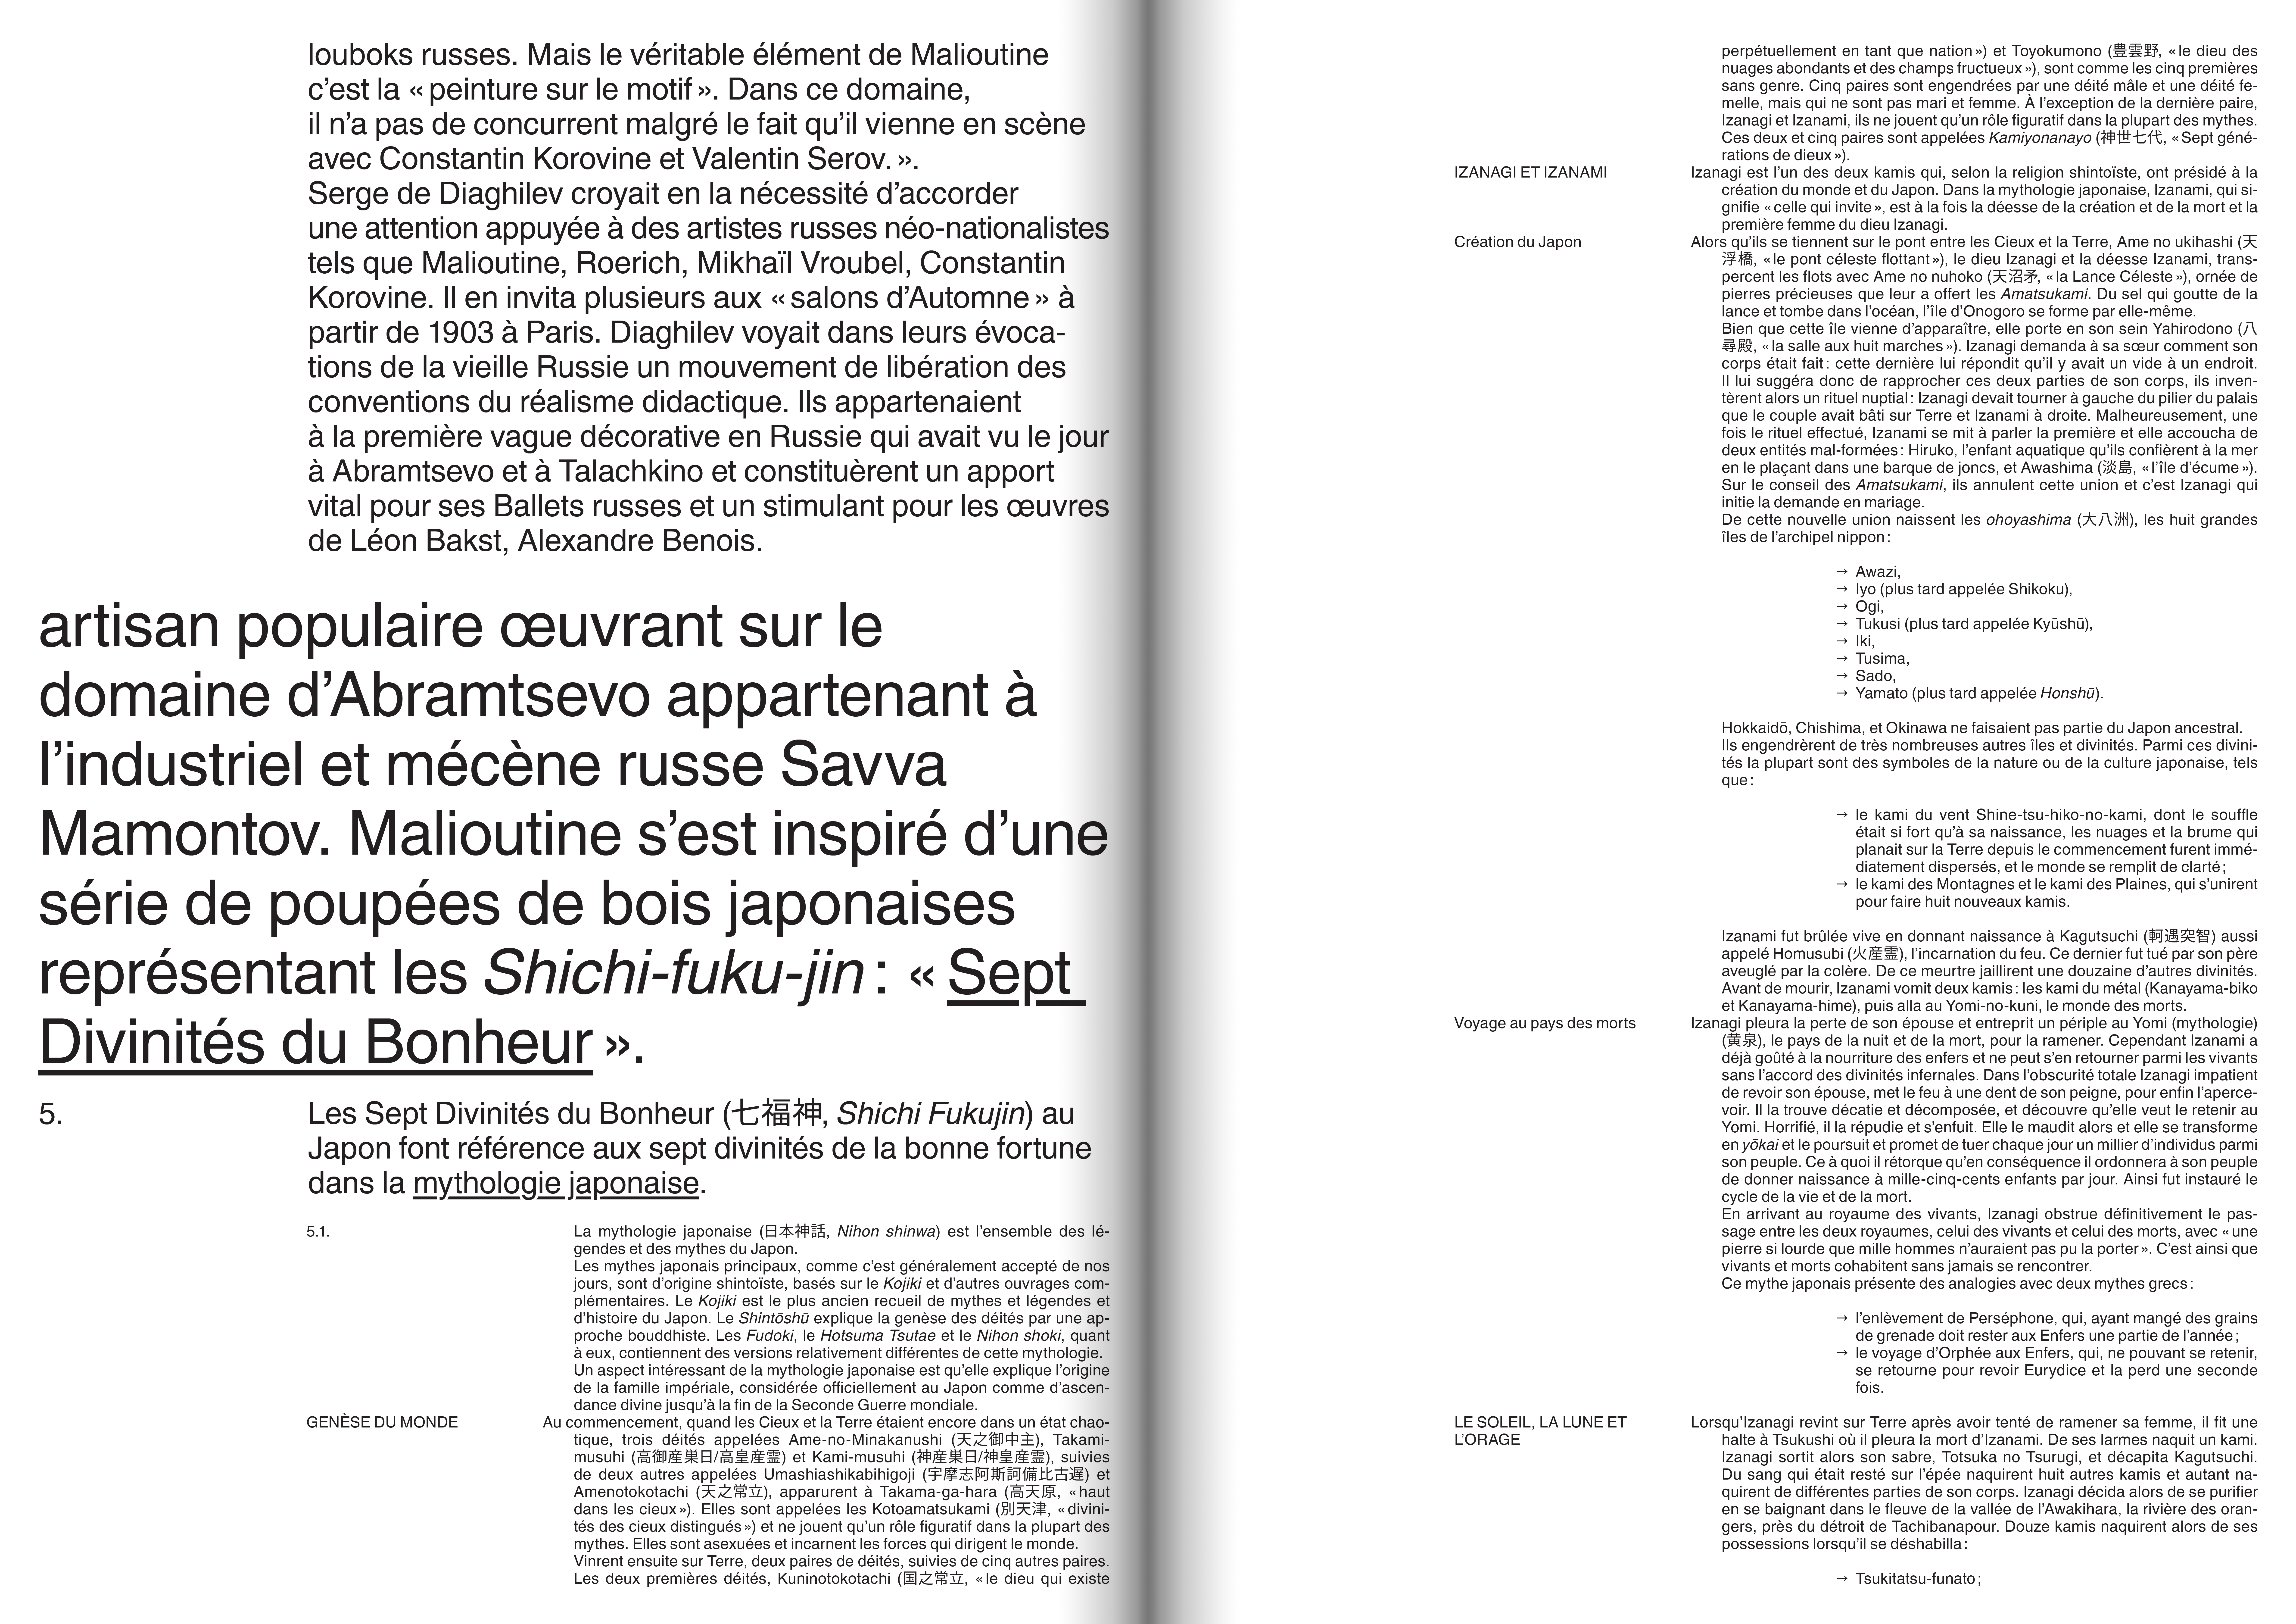 Helvetica World donne accès à plusieurs scripts dans une même fonte